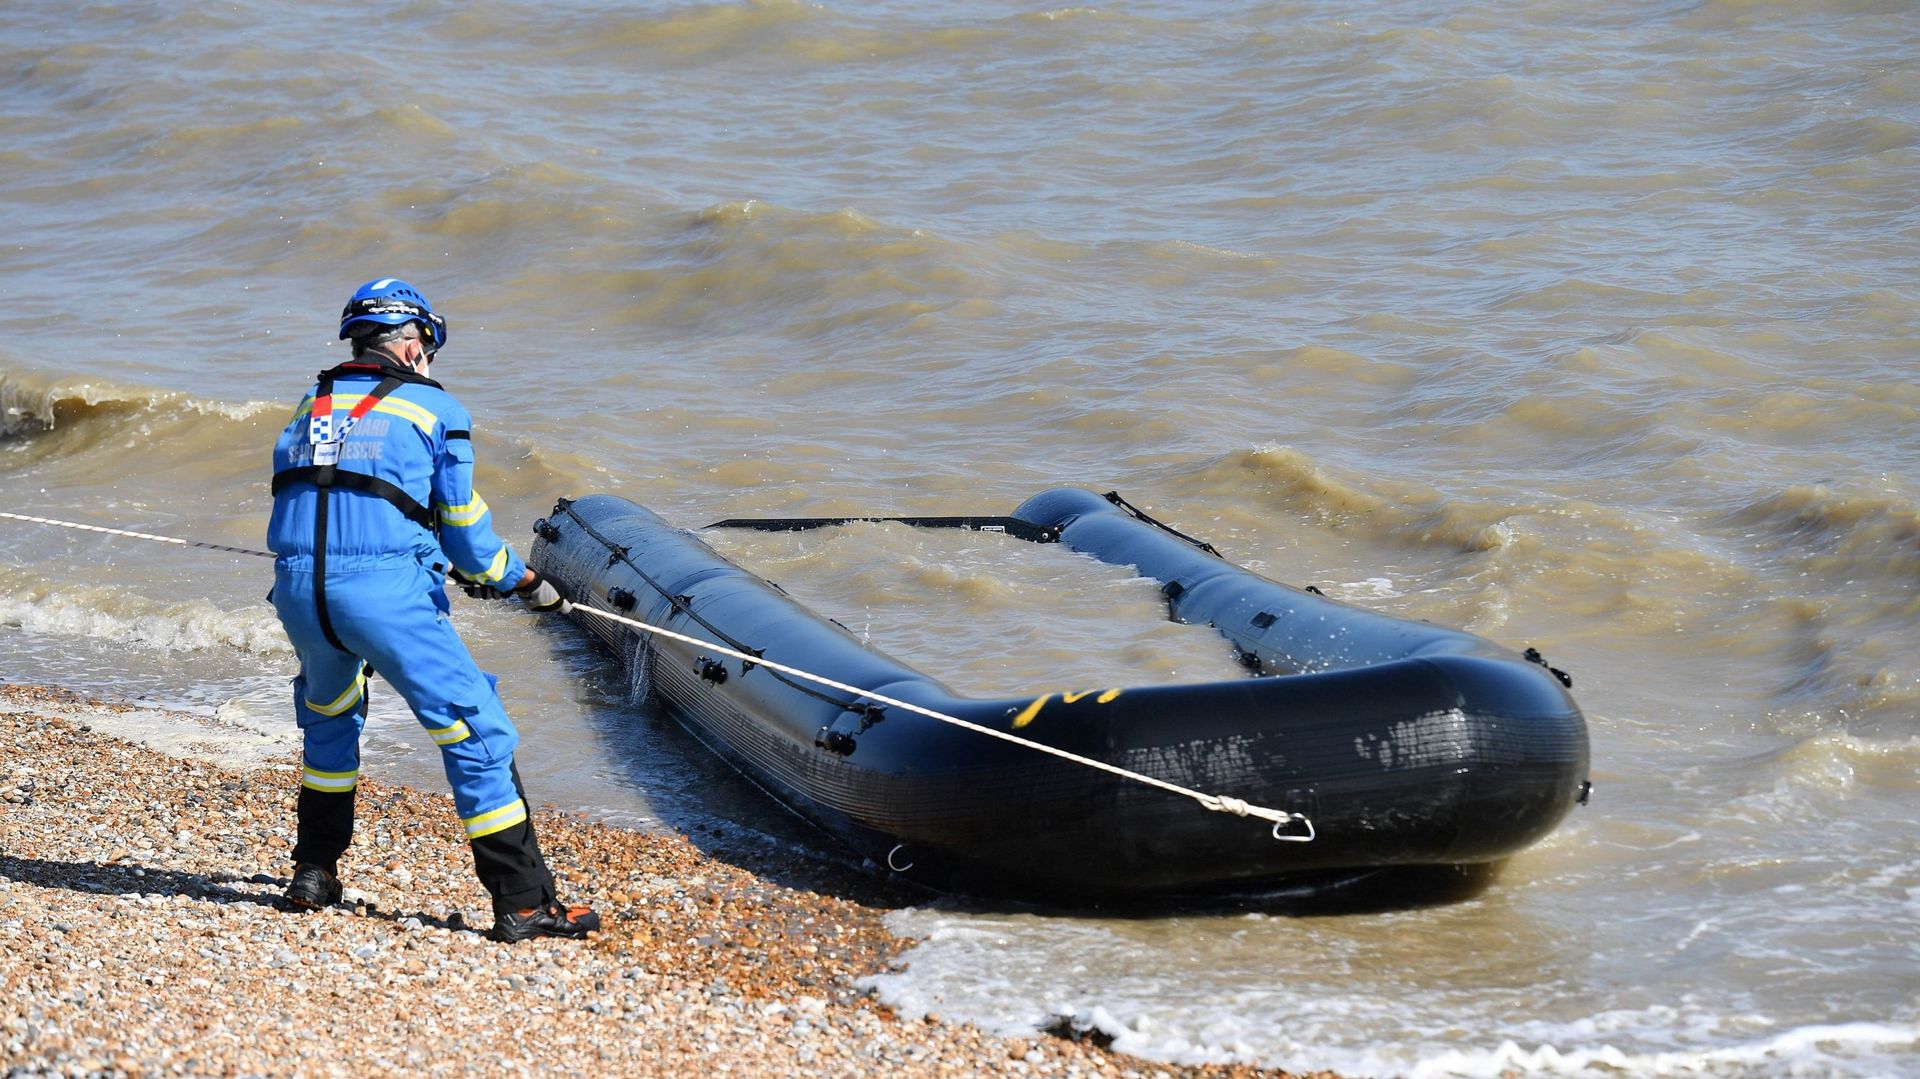 Des membres des garde-côtes britanniques retirent un bateau gorgé d'eau et abandonné, qui s'était échoué sur une plage de Lydd on Sea dans le sud-est de l'Angleterre le 8 septembre 2021.